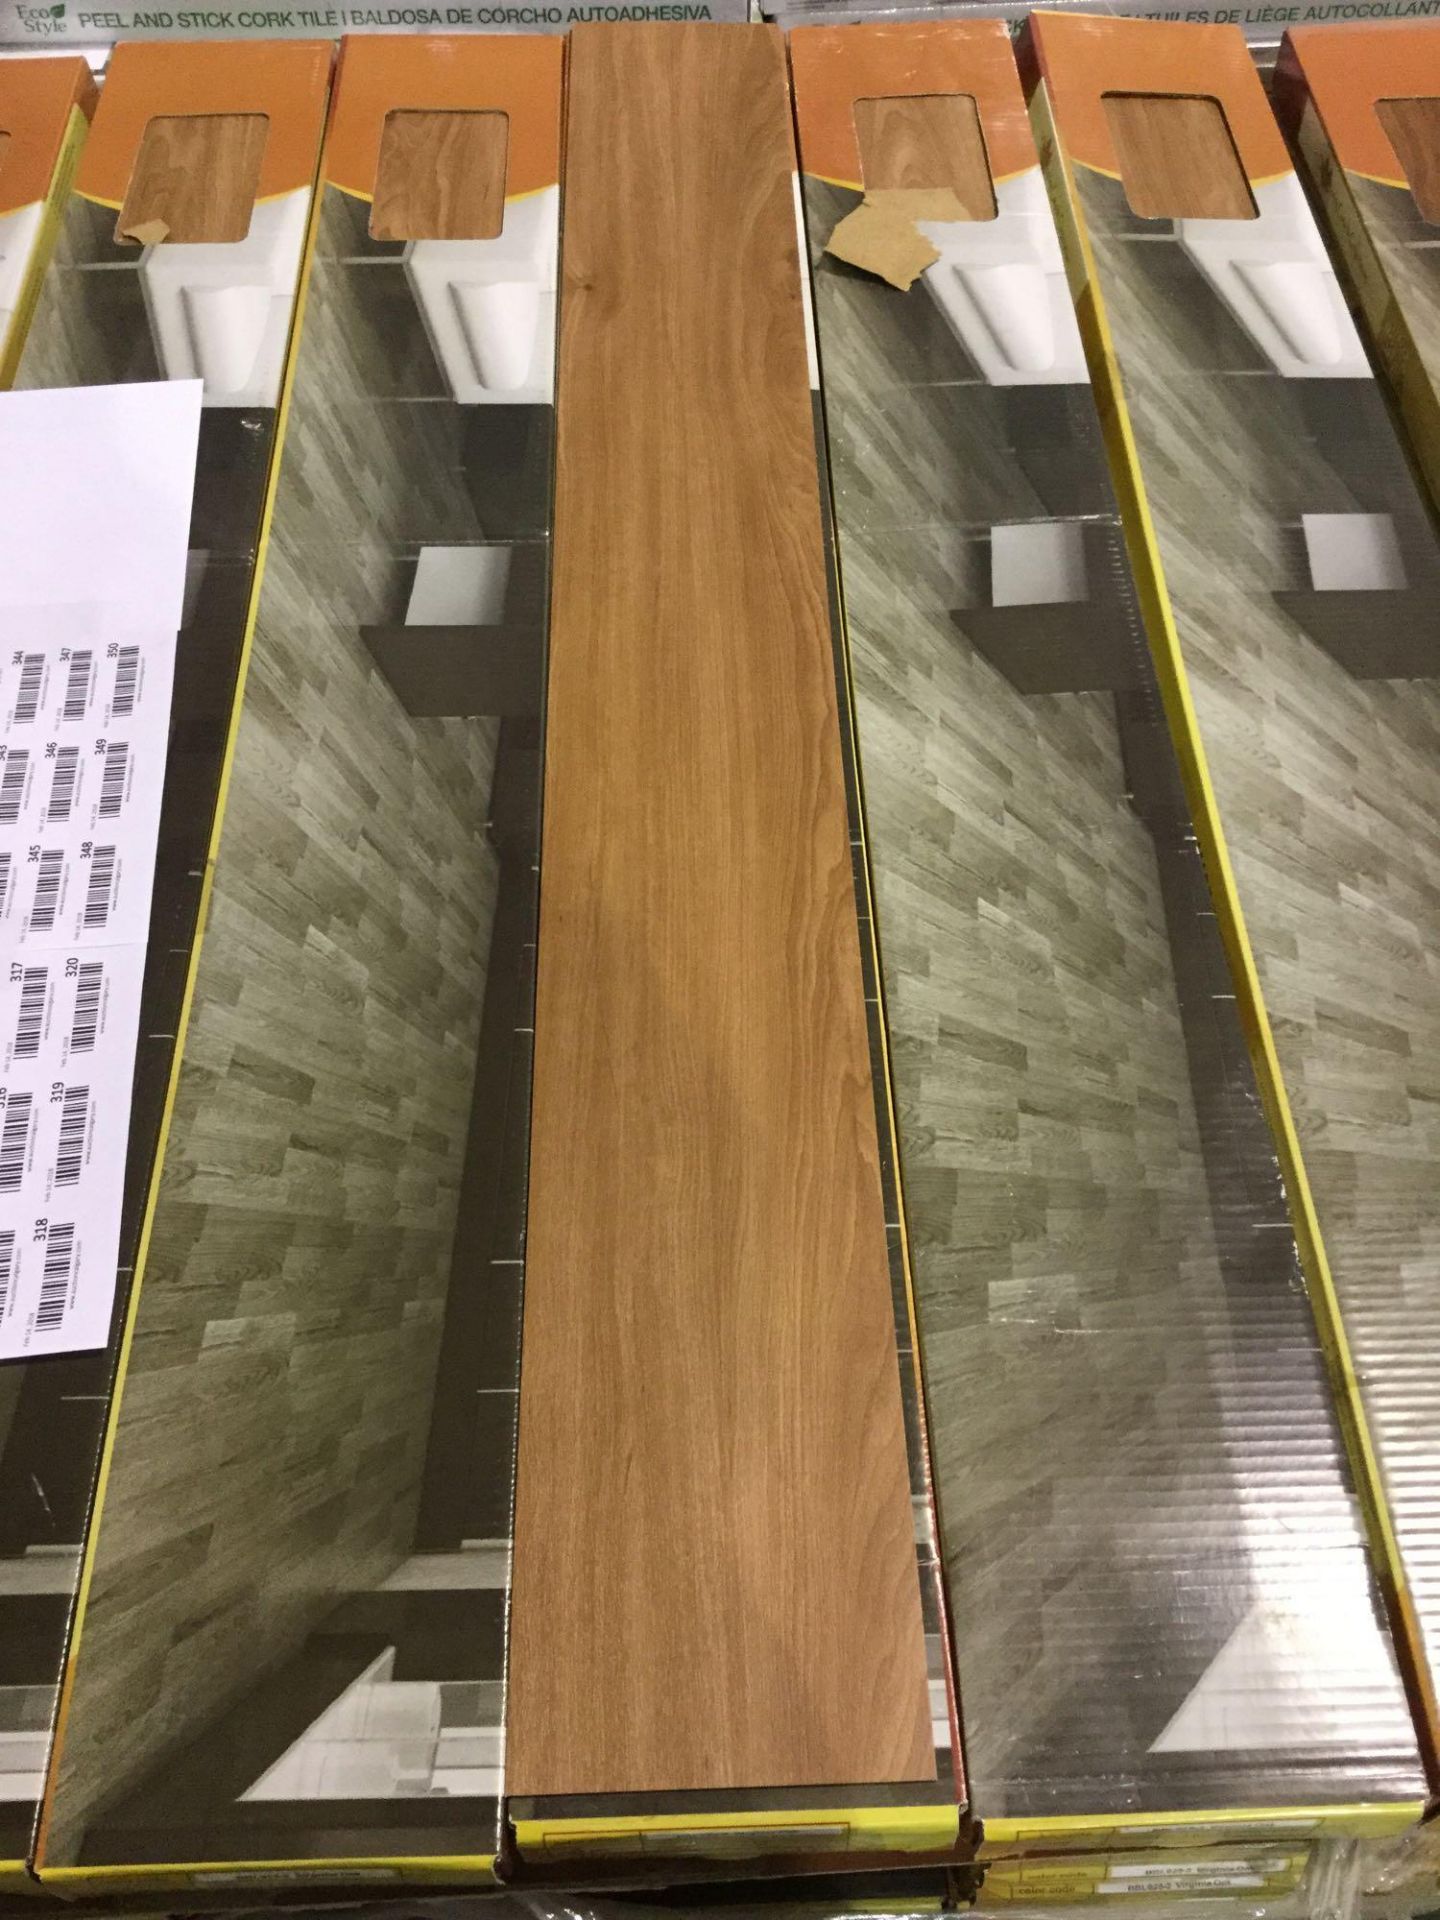 2mm Vinyl Plank Flooring - Virginia Oak 43 Sq ft/box - Image 2 of 3